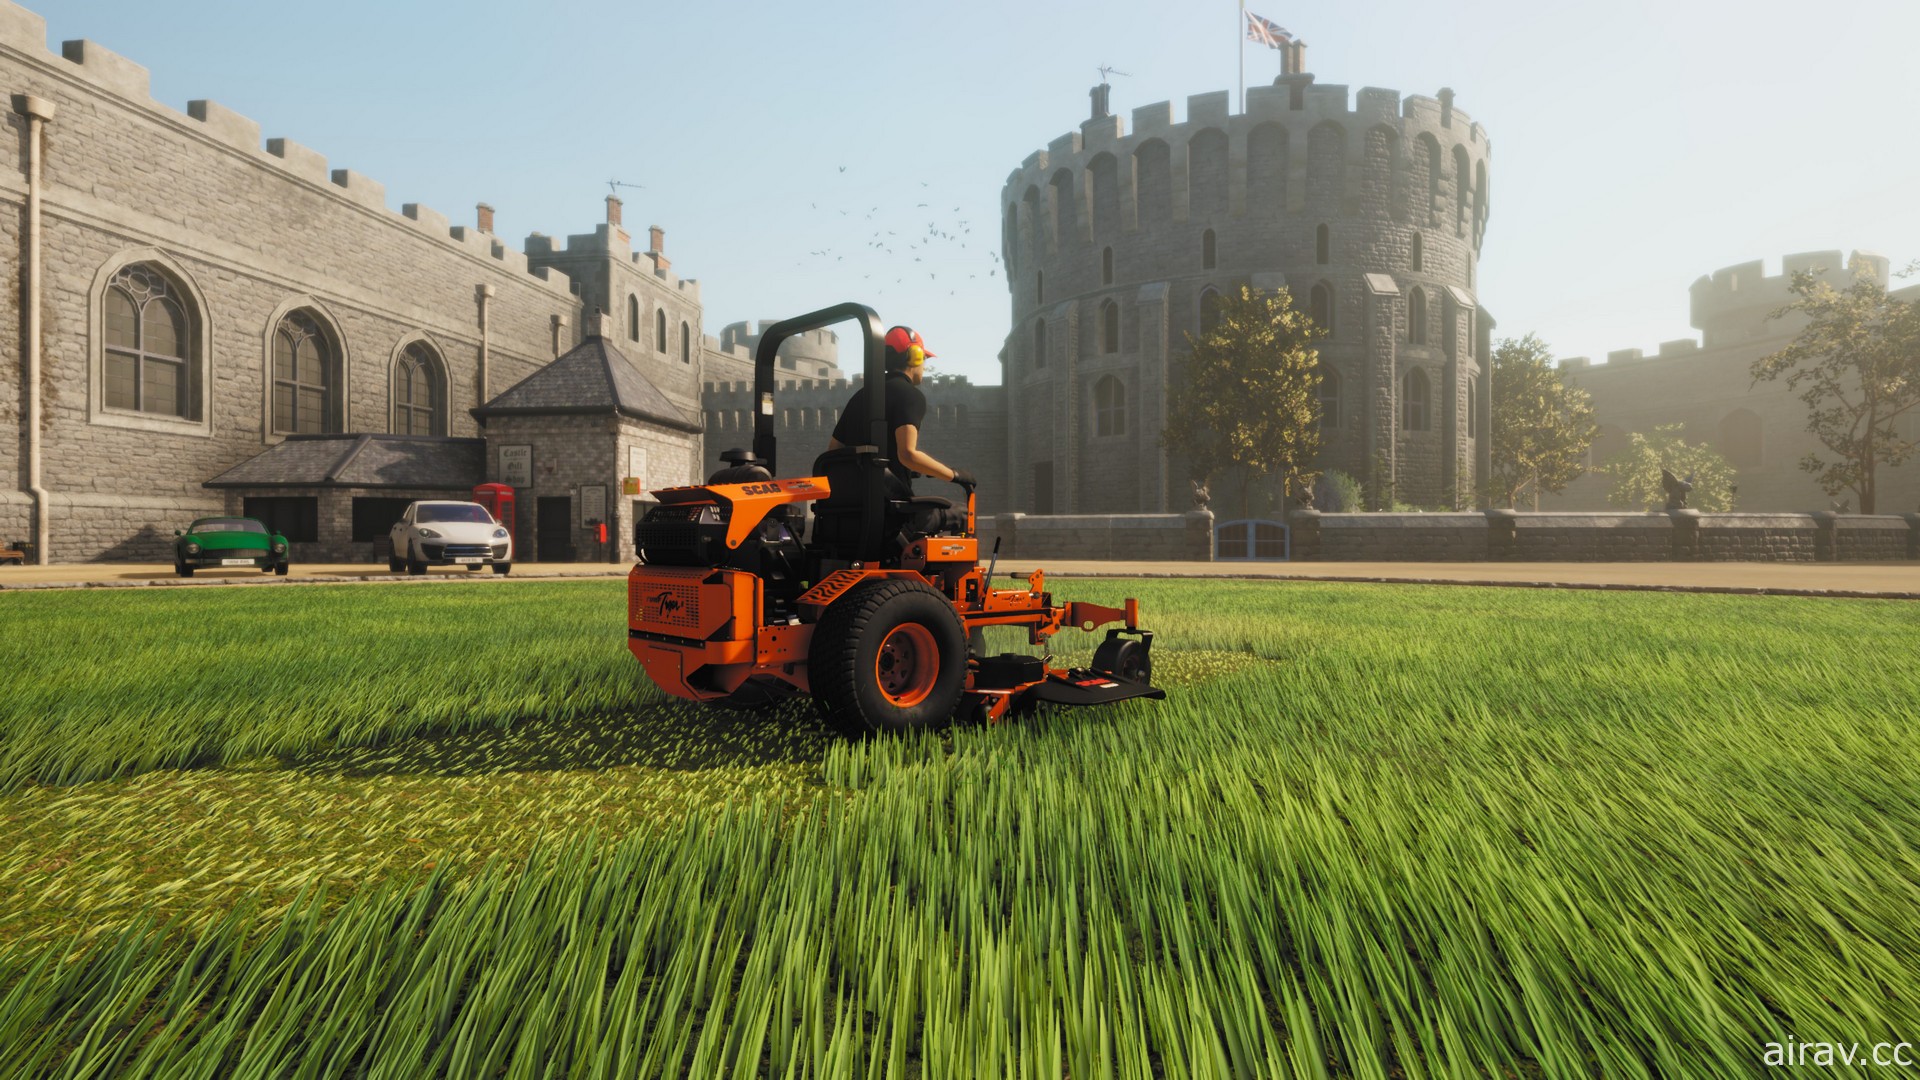 《草坪修剪模拟器》2021 年夏季登场 驾驶各式真实割草机打造自己的草坪修剪事业